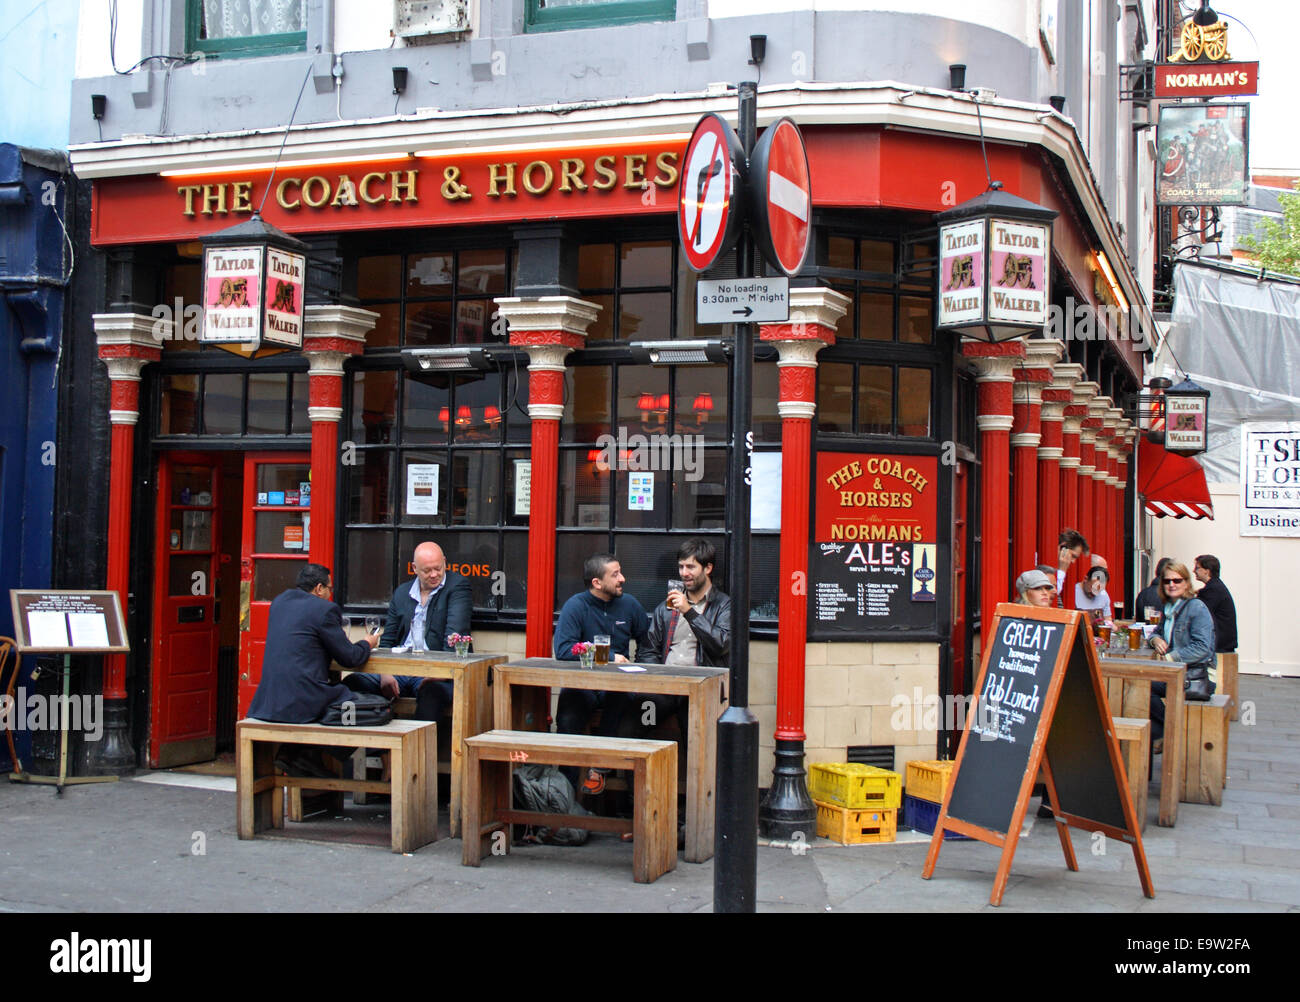 Der Coach und Pferde Pub im Soho-Bereich von London, England. Stockfoto